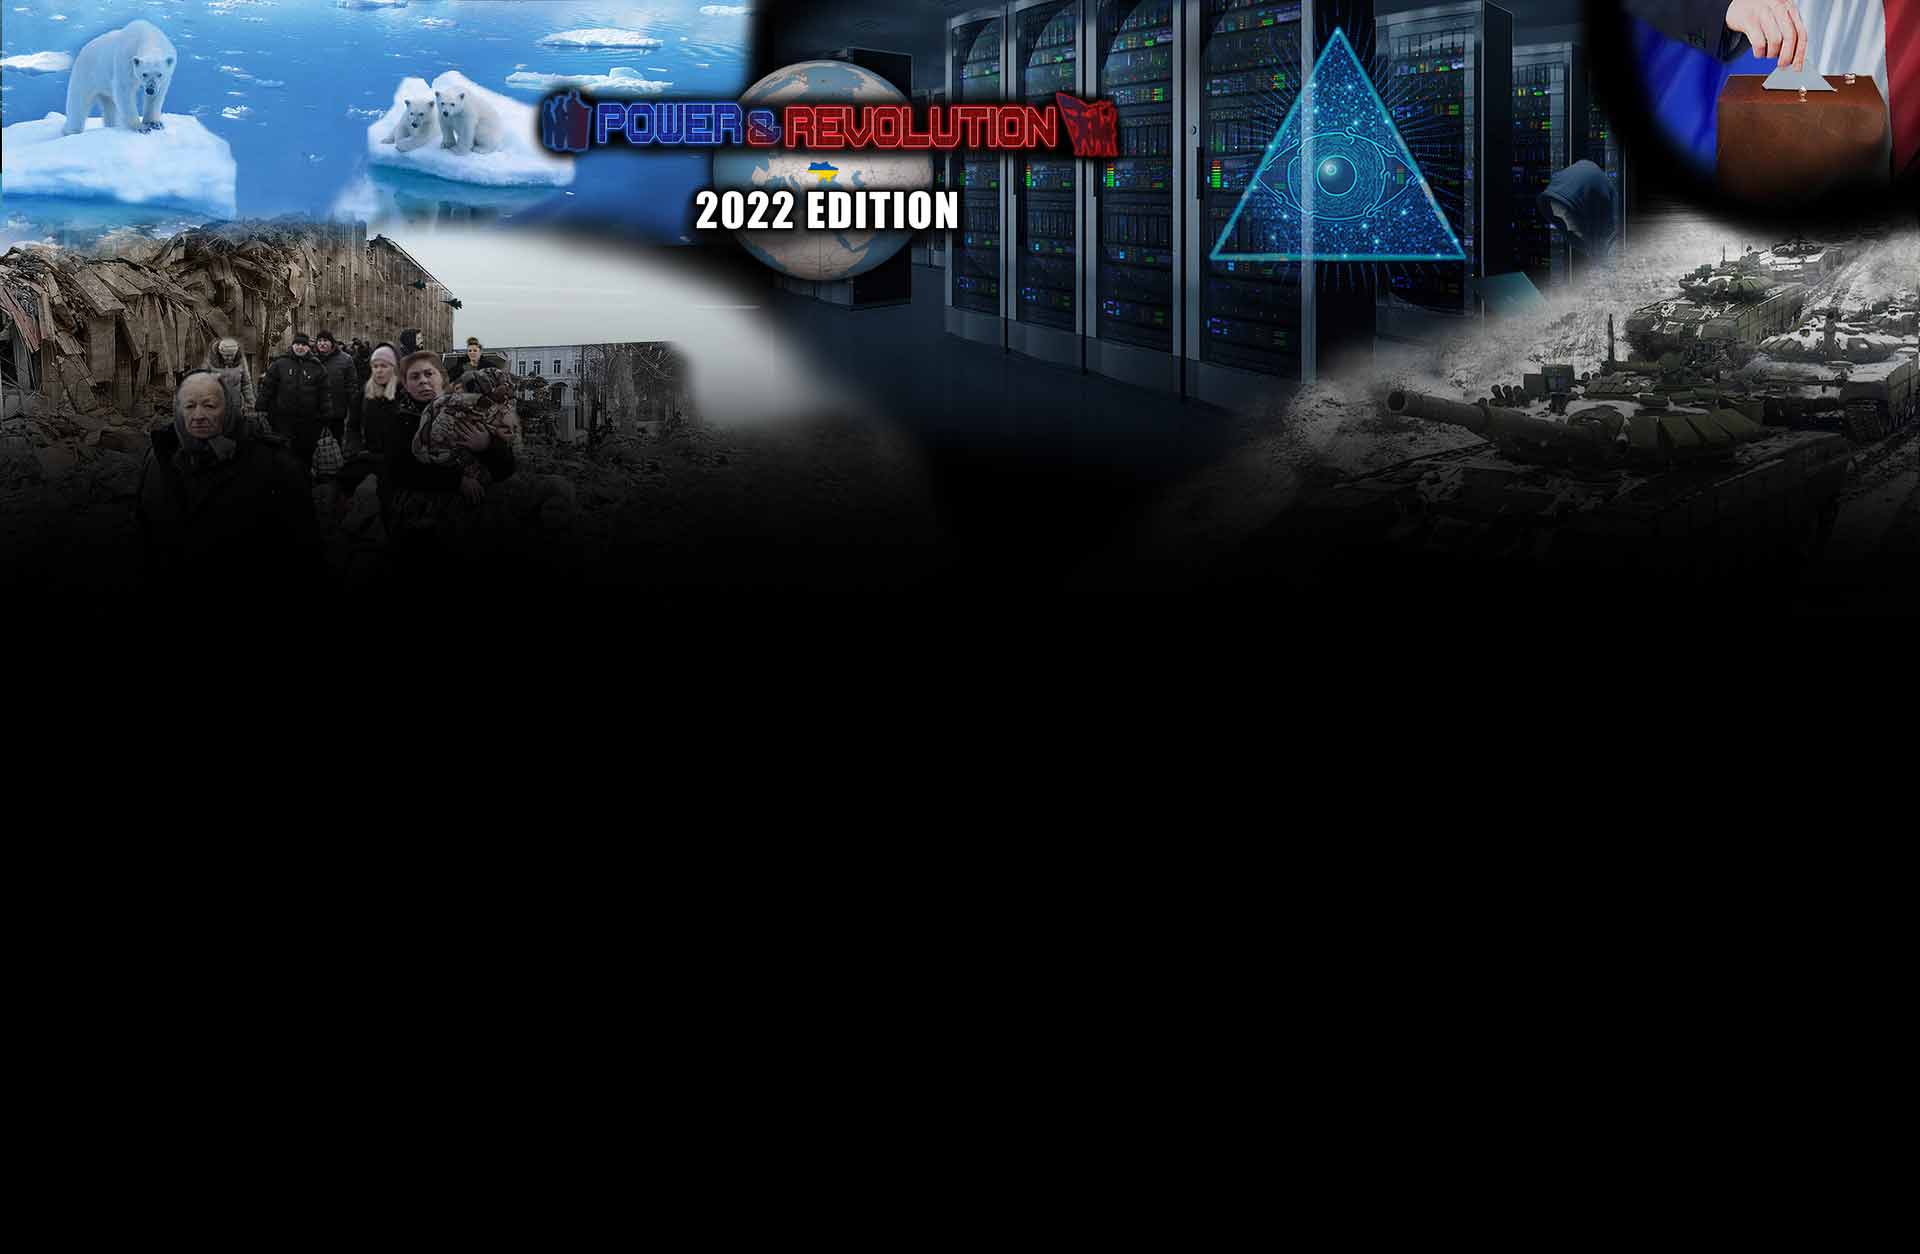 Power & Revolution 2022 Steam Edition